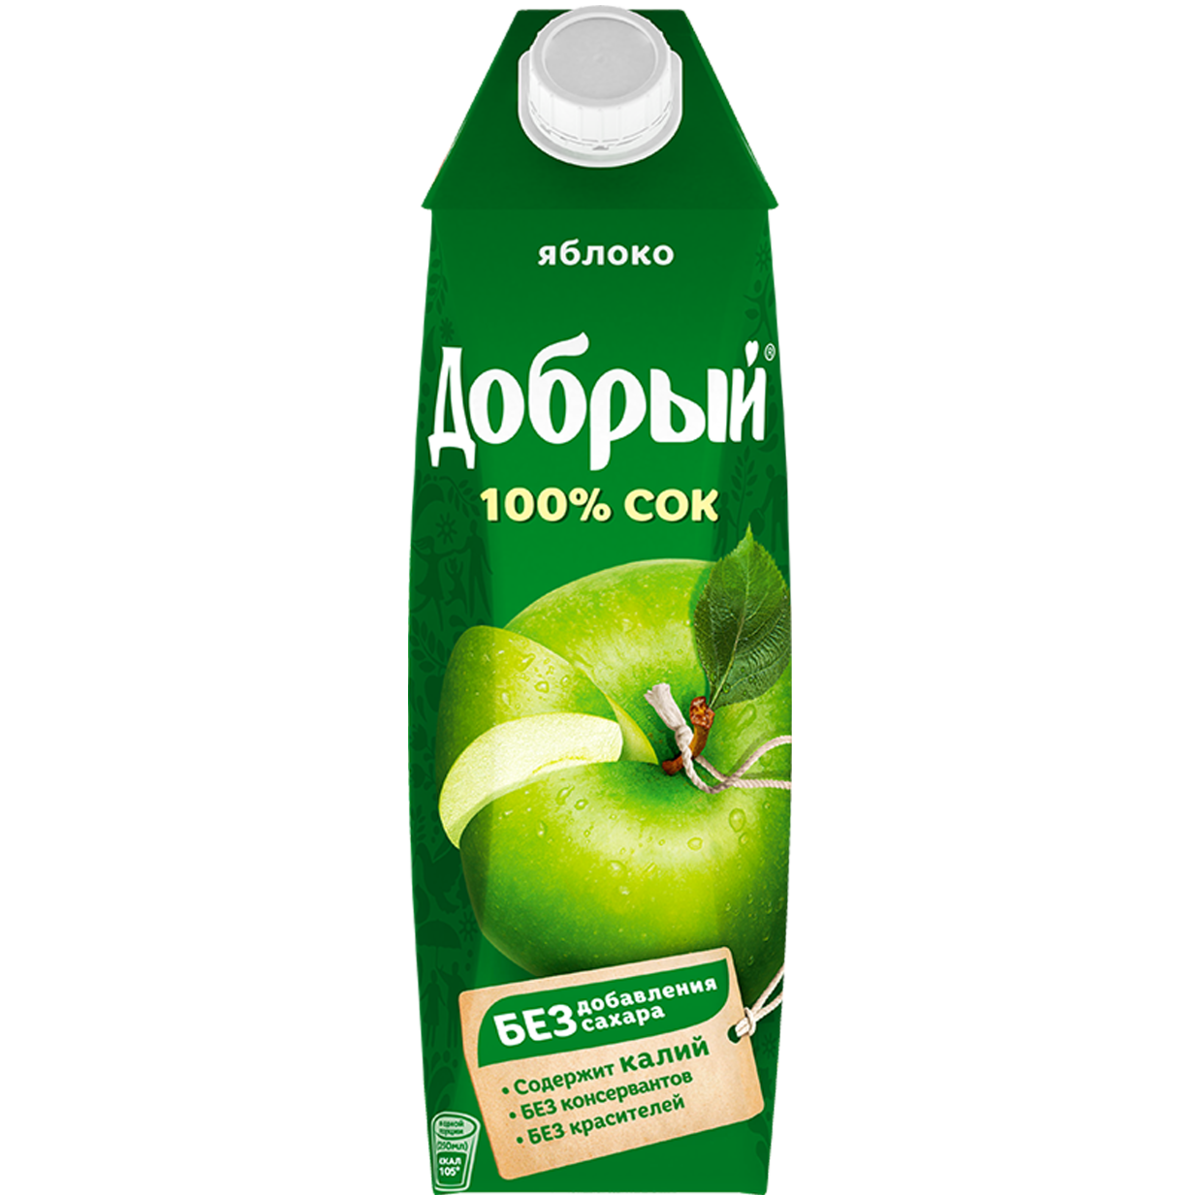 Купить сок литровый. Сок,нектар добрый яблоко 1л. Сок добрый зеленое яблоко 1л. Сок добрый яблочный 1л. Сок добрый 0,33 яблоко.